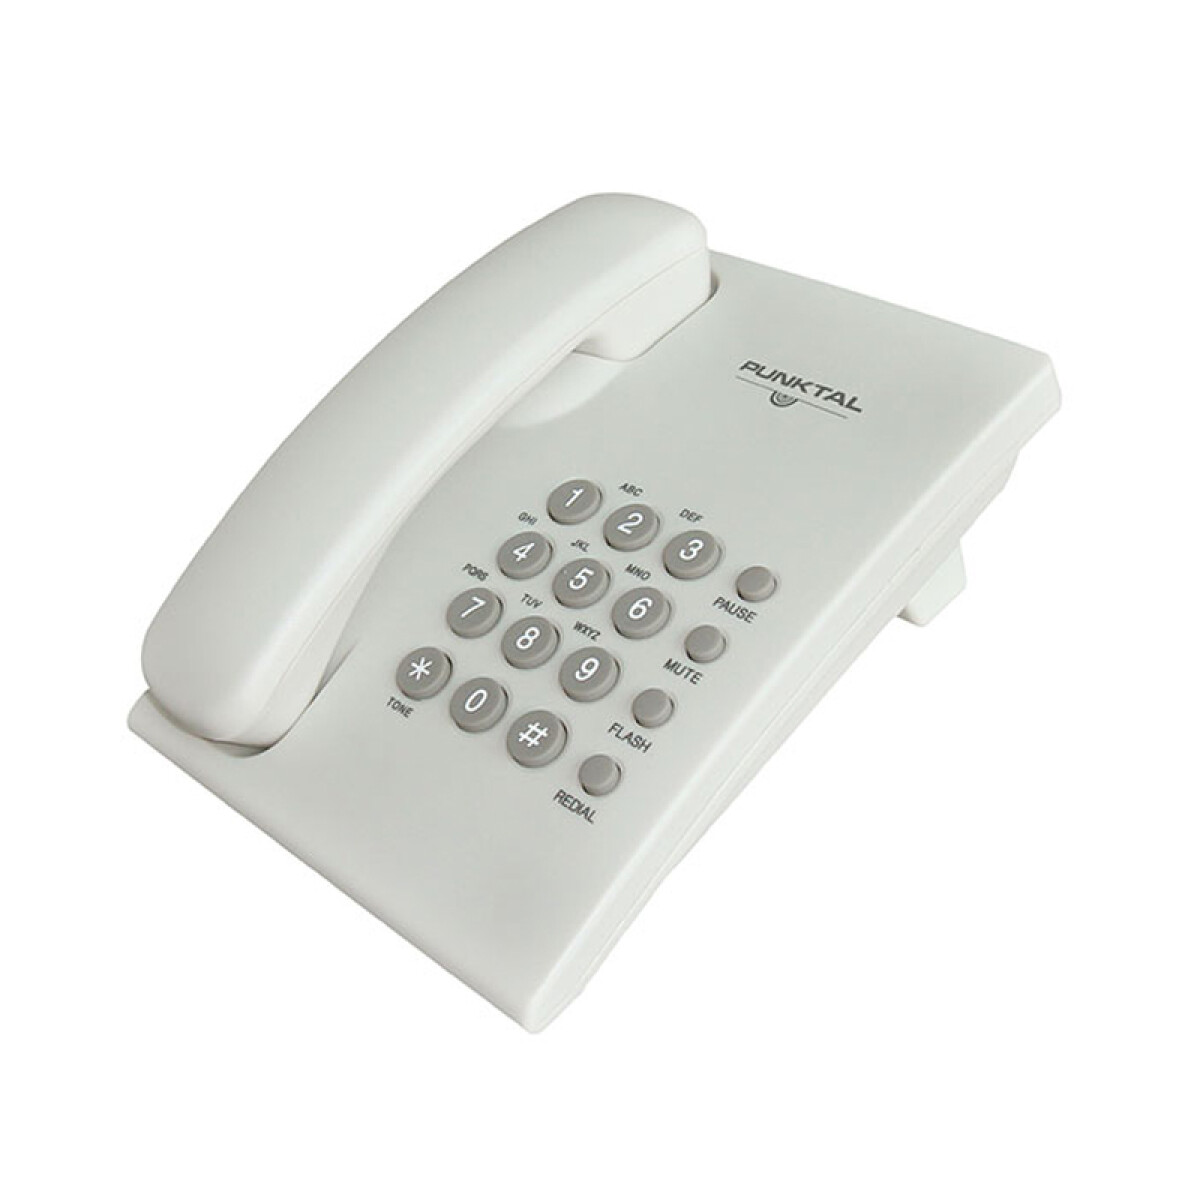 Teléfono de Mesa Punktal TM207 con Timbre Ajustable - 001 